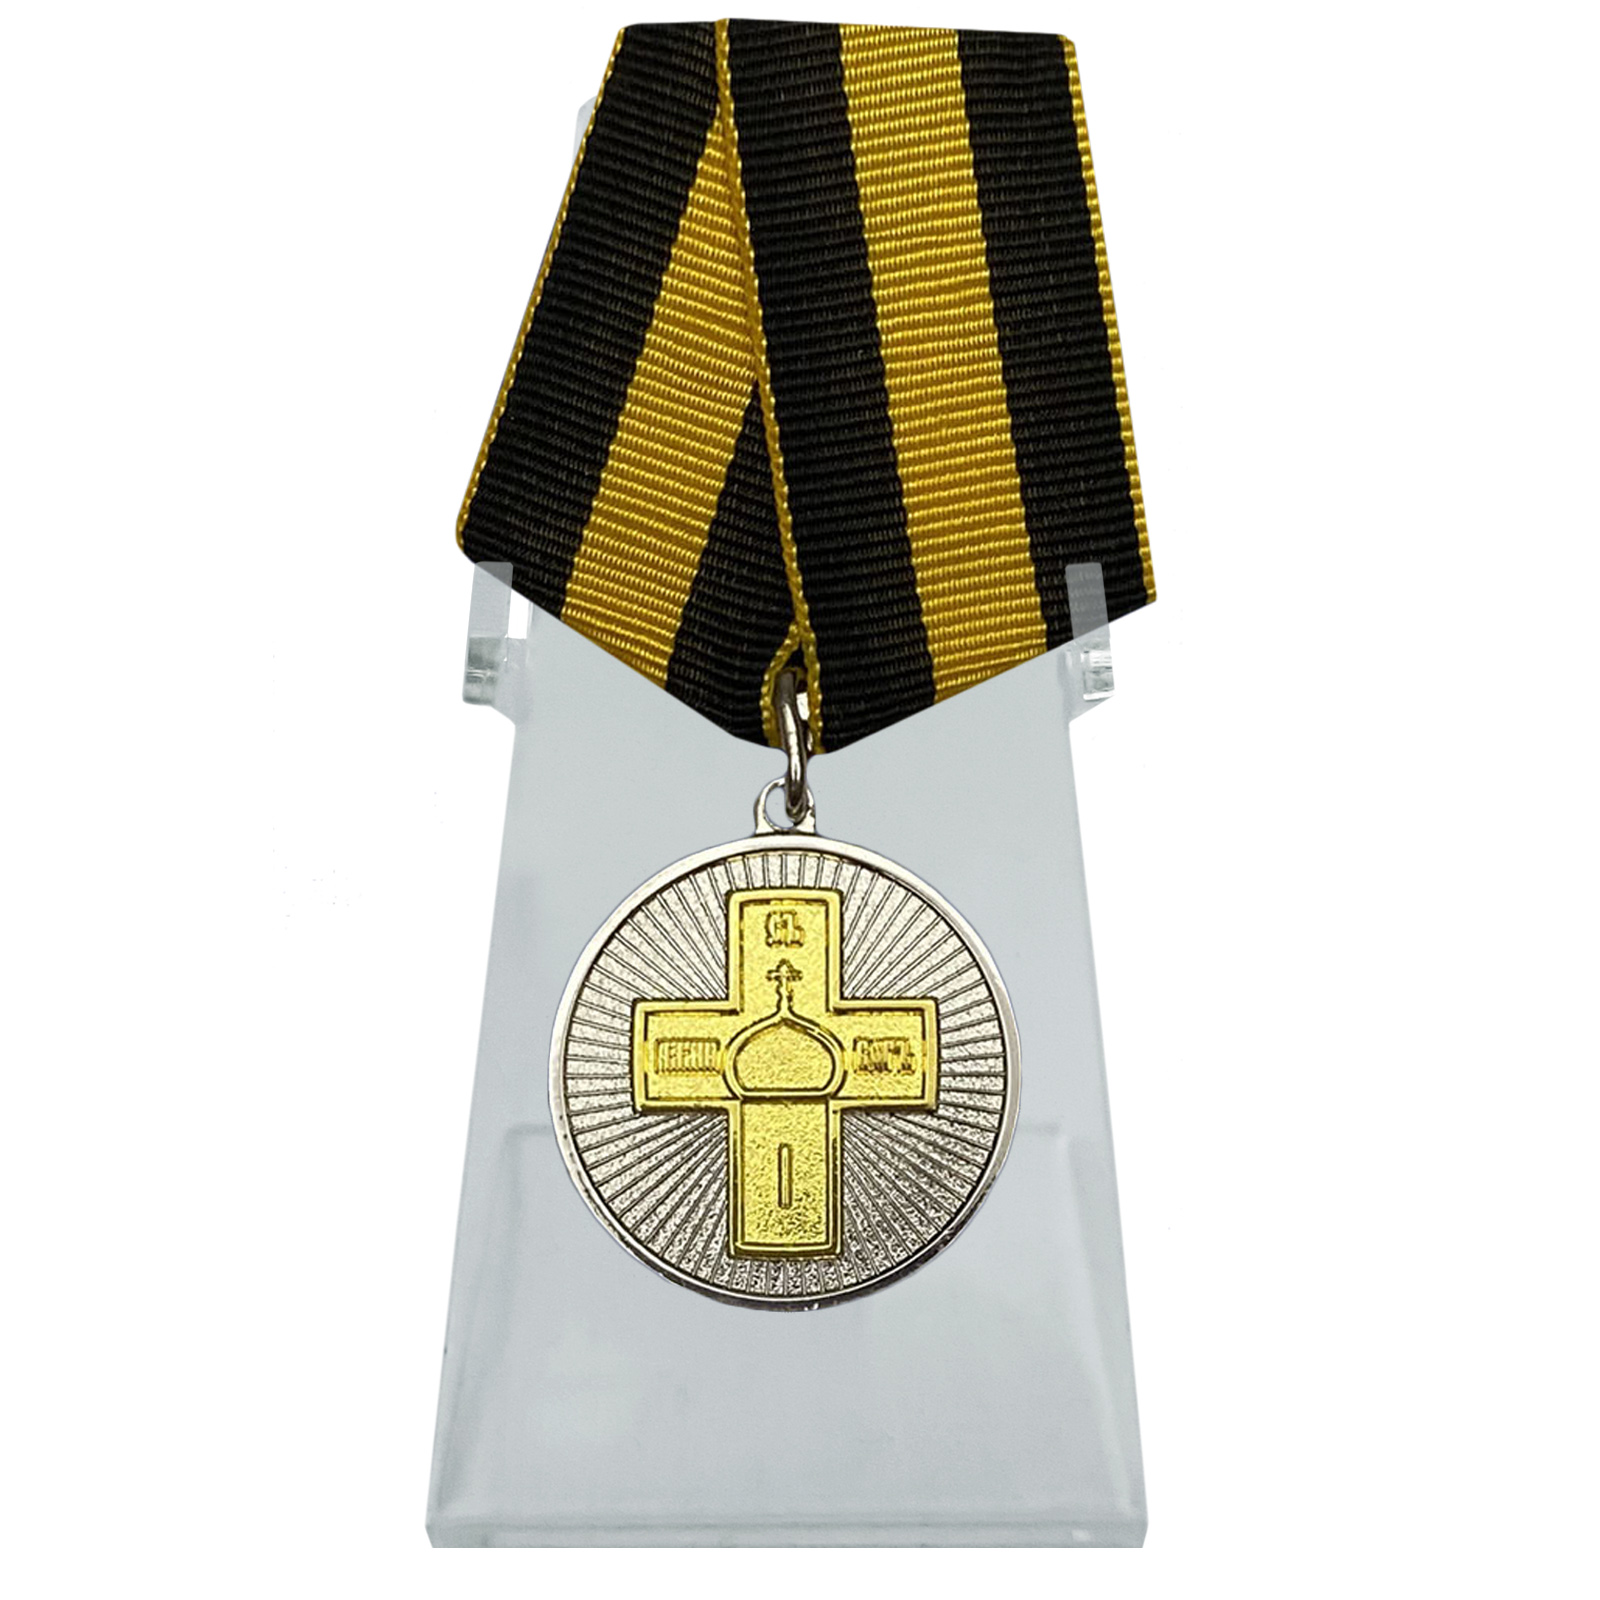 Медаль "Дело Веры" 2 степени на подставке